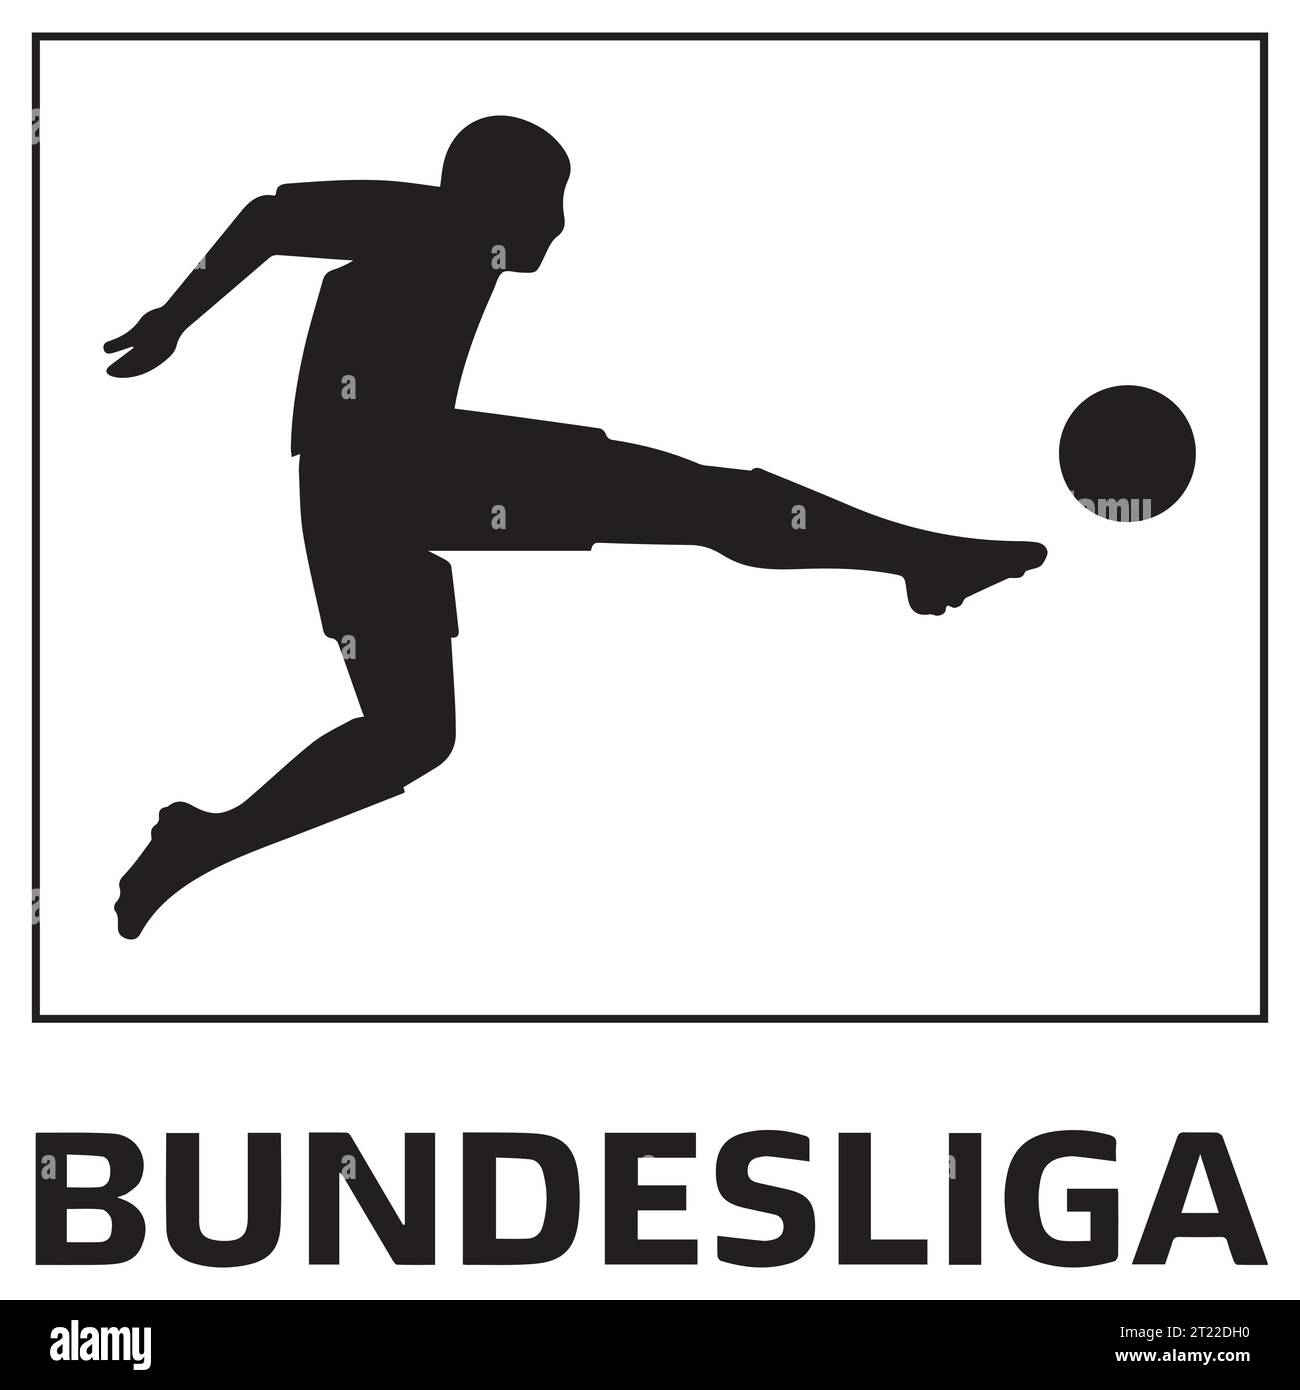 Bundesliga logo noir et blanc système allemand de ligue de football professionnel, Illustration vectorielle Résumé image modifiable en noir et blanc Illustration de Vecteur